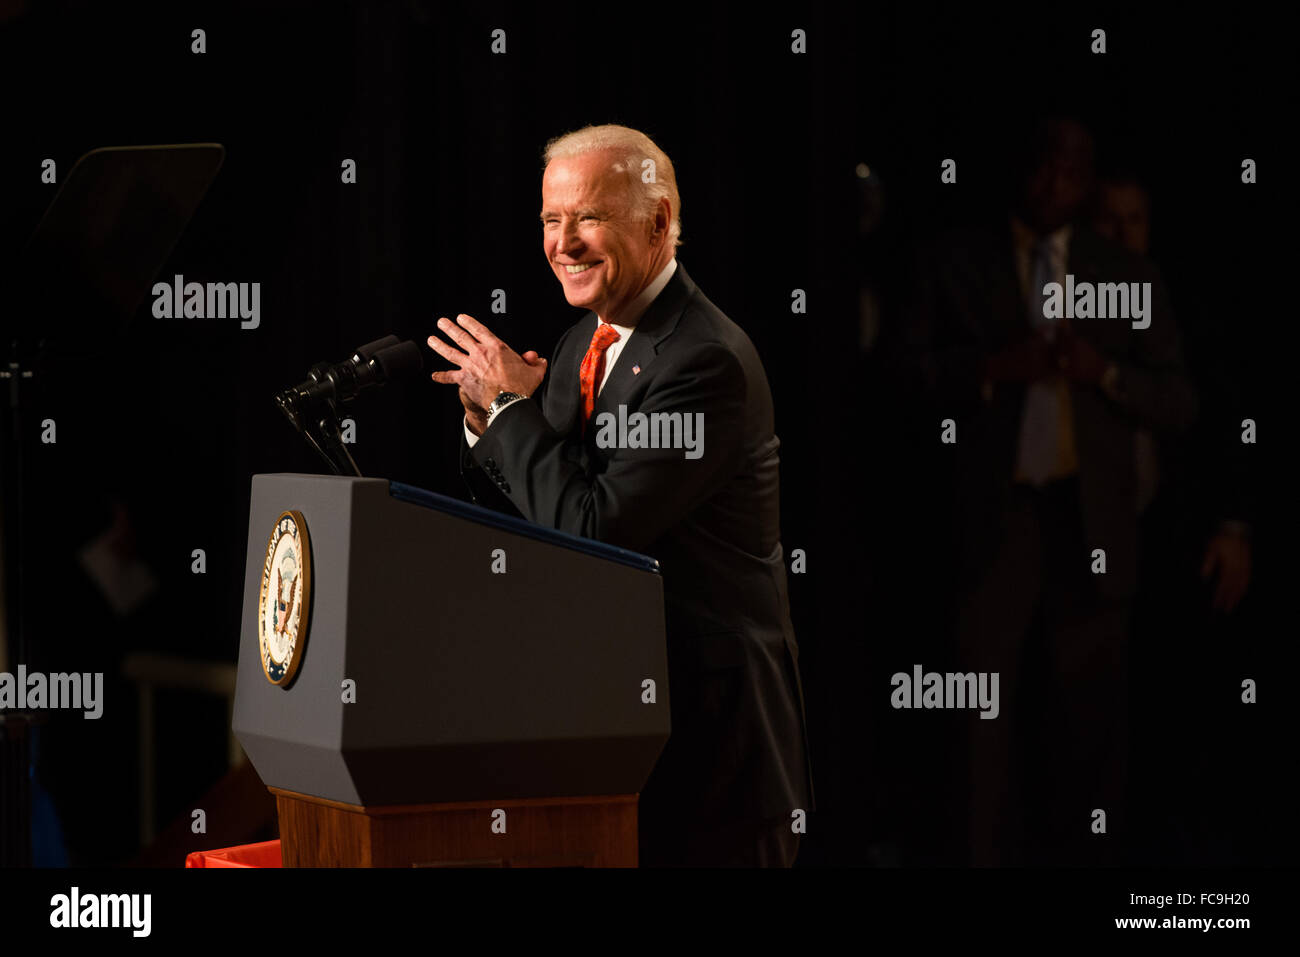 El Vicepresidente de los Estados Unidos Joe Biden habla a una multitud en el campus de la Universidad de Siracusa sobre agresiones sexuales. Foto de stock